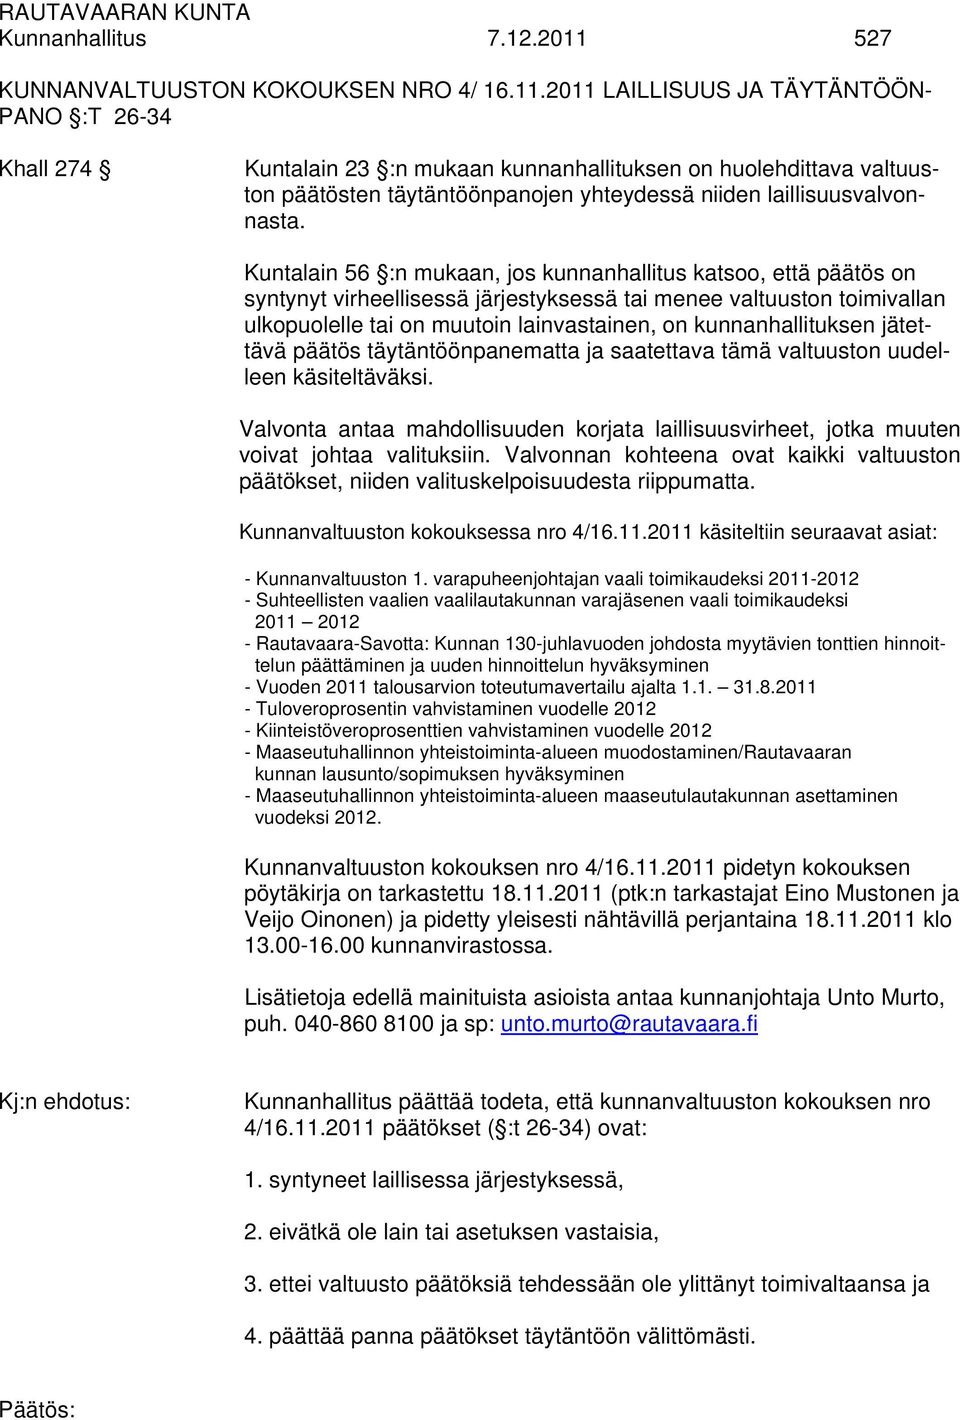 2011 LAILLISUUS JA TÄYTÄNTÖÖN- PANO :T 26-34 Khall 274 Kuntalain 23 :n mukaan kunnanhallituksen on huolehdittava valtuuston päätösten täytäntöönpanojen yhteydessä niiden laillisuusvalvonnasta.